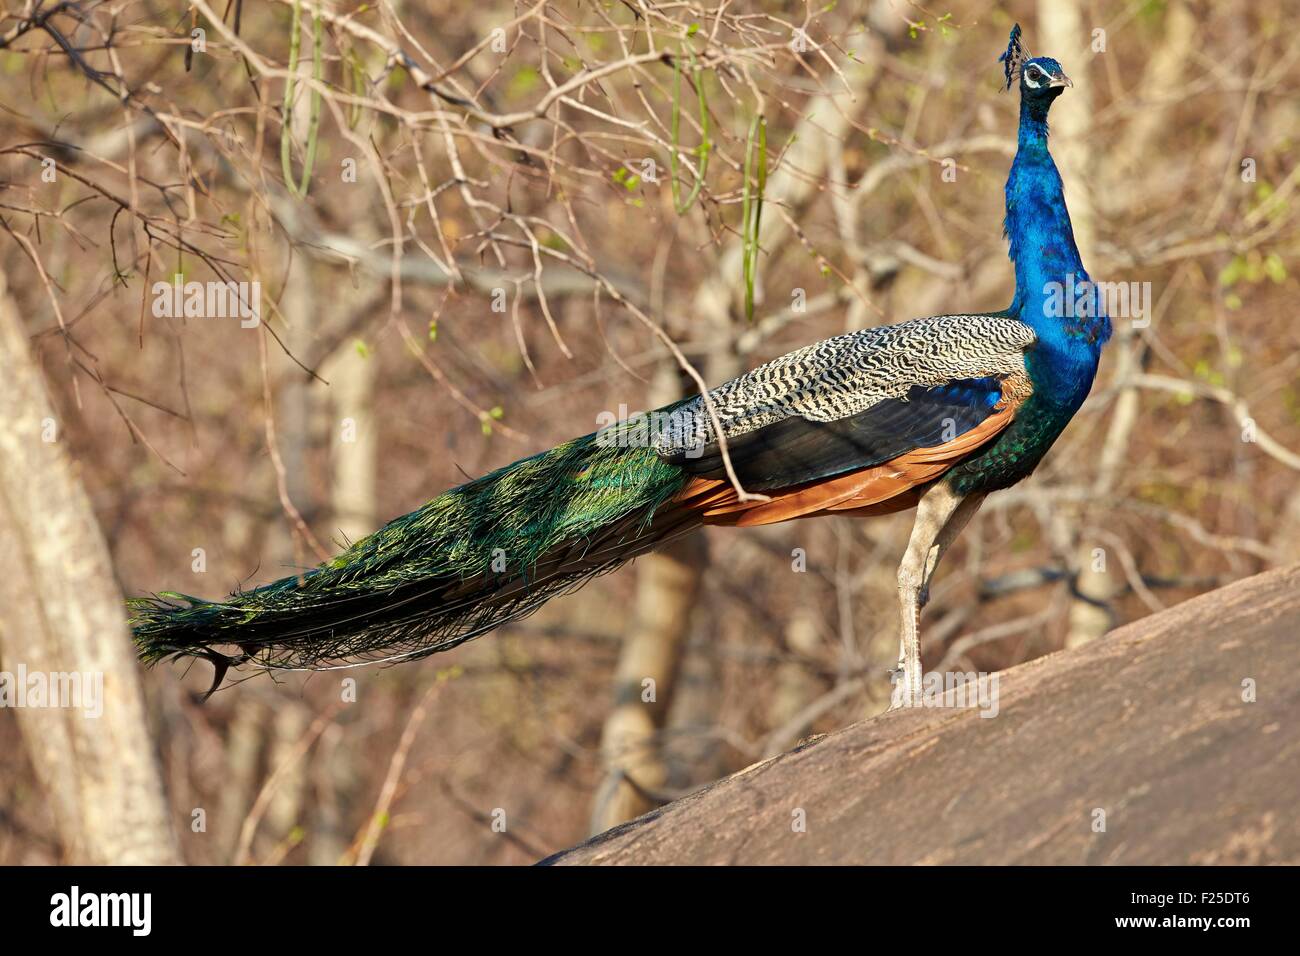 Asia, India, Karnataka, Sandur Mountain Range, Indian Peafowl or Blue Peafowl (Pavo cristatus), male Stock Photo